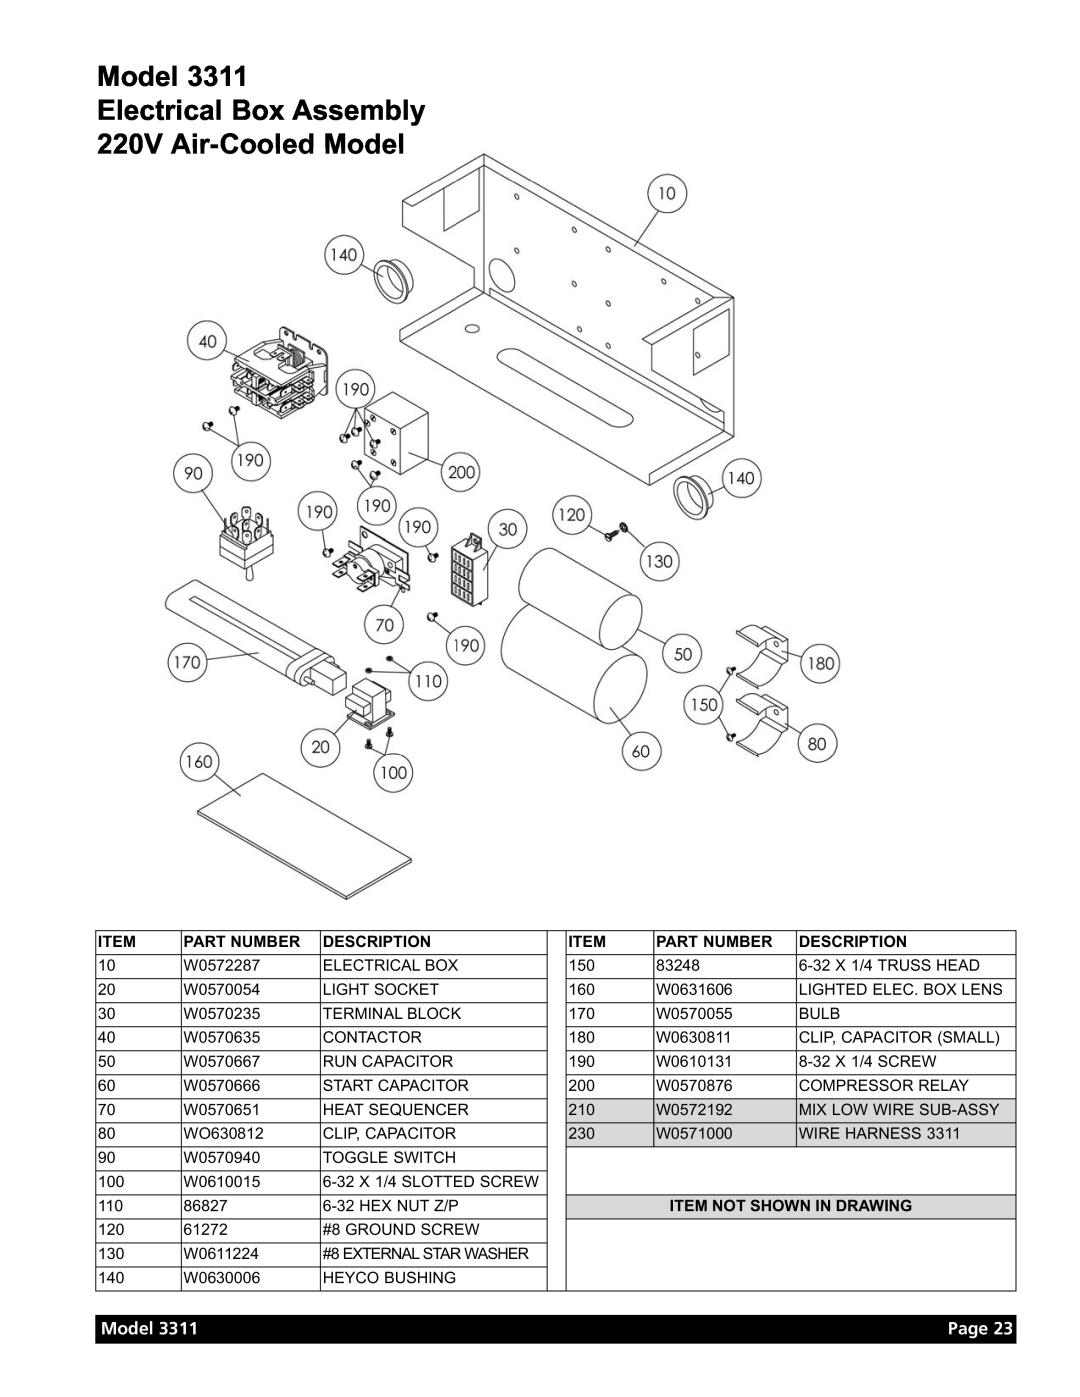 Grindmaster Model 3311 manual Model Electrical Box Assembly 220V Air-Cooled Model, Page, Part Number, Description 